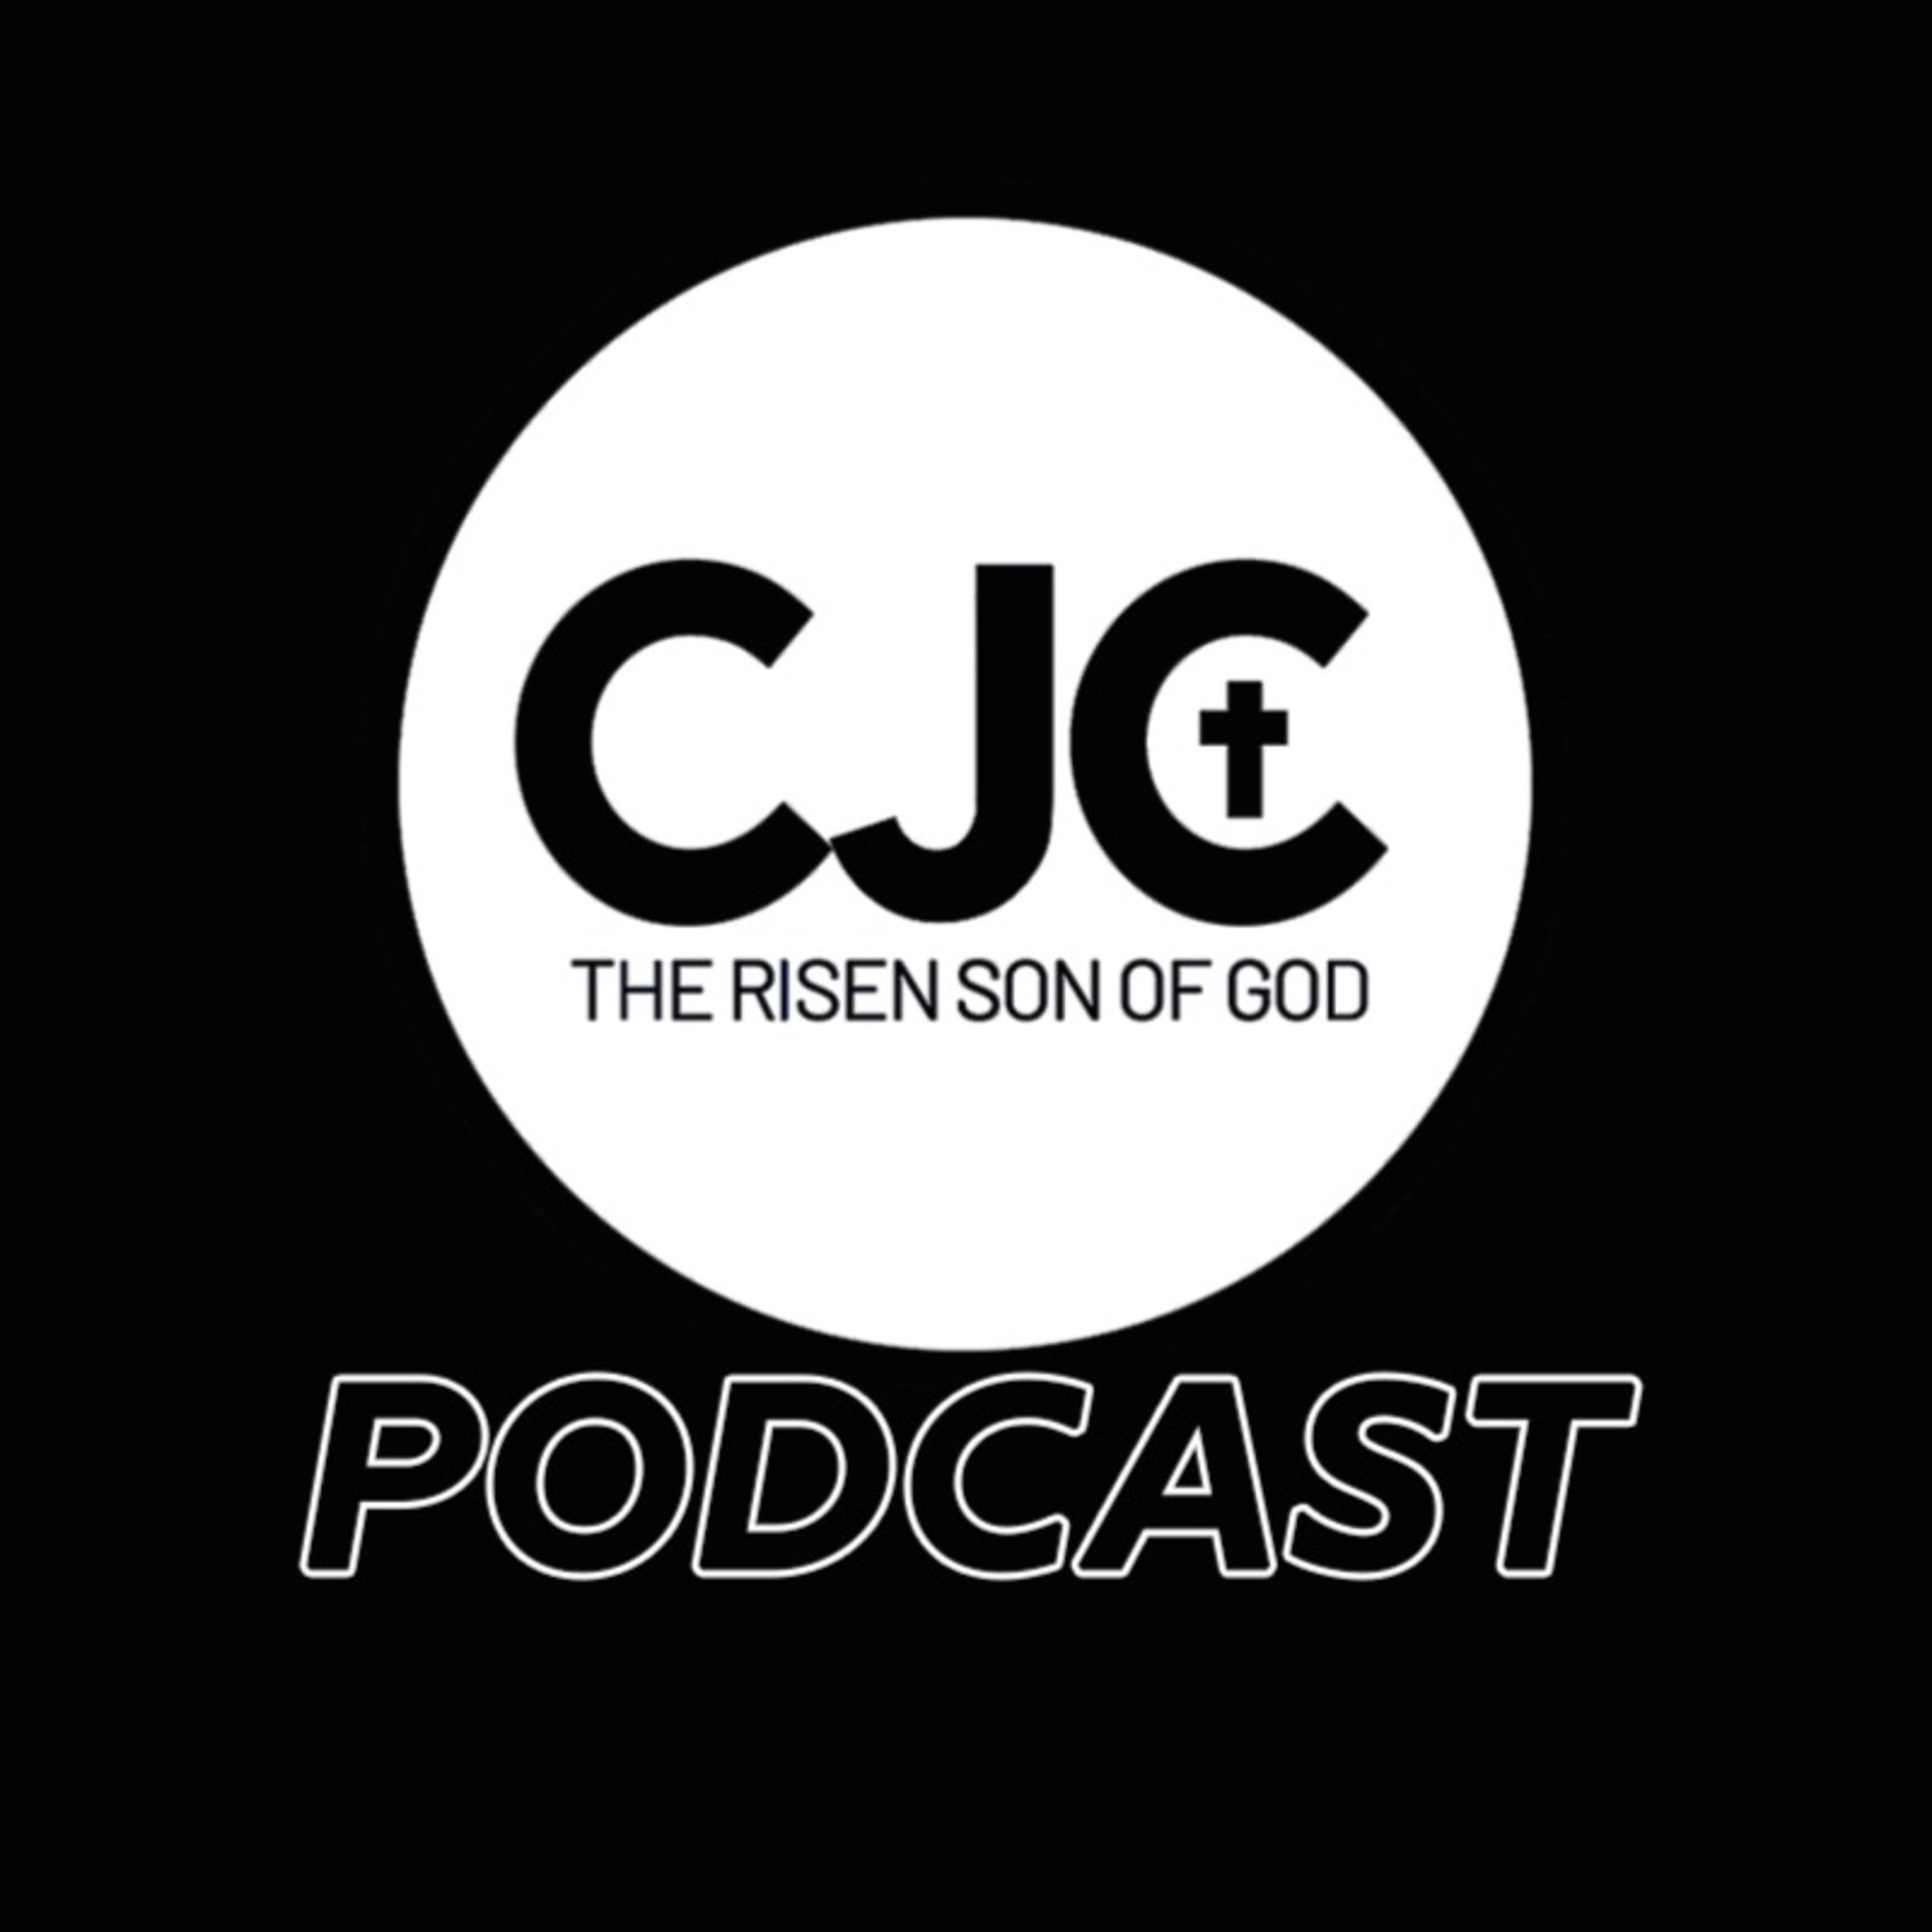 CJCRSG Podcast